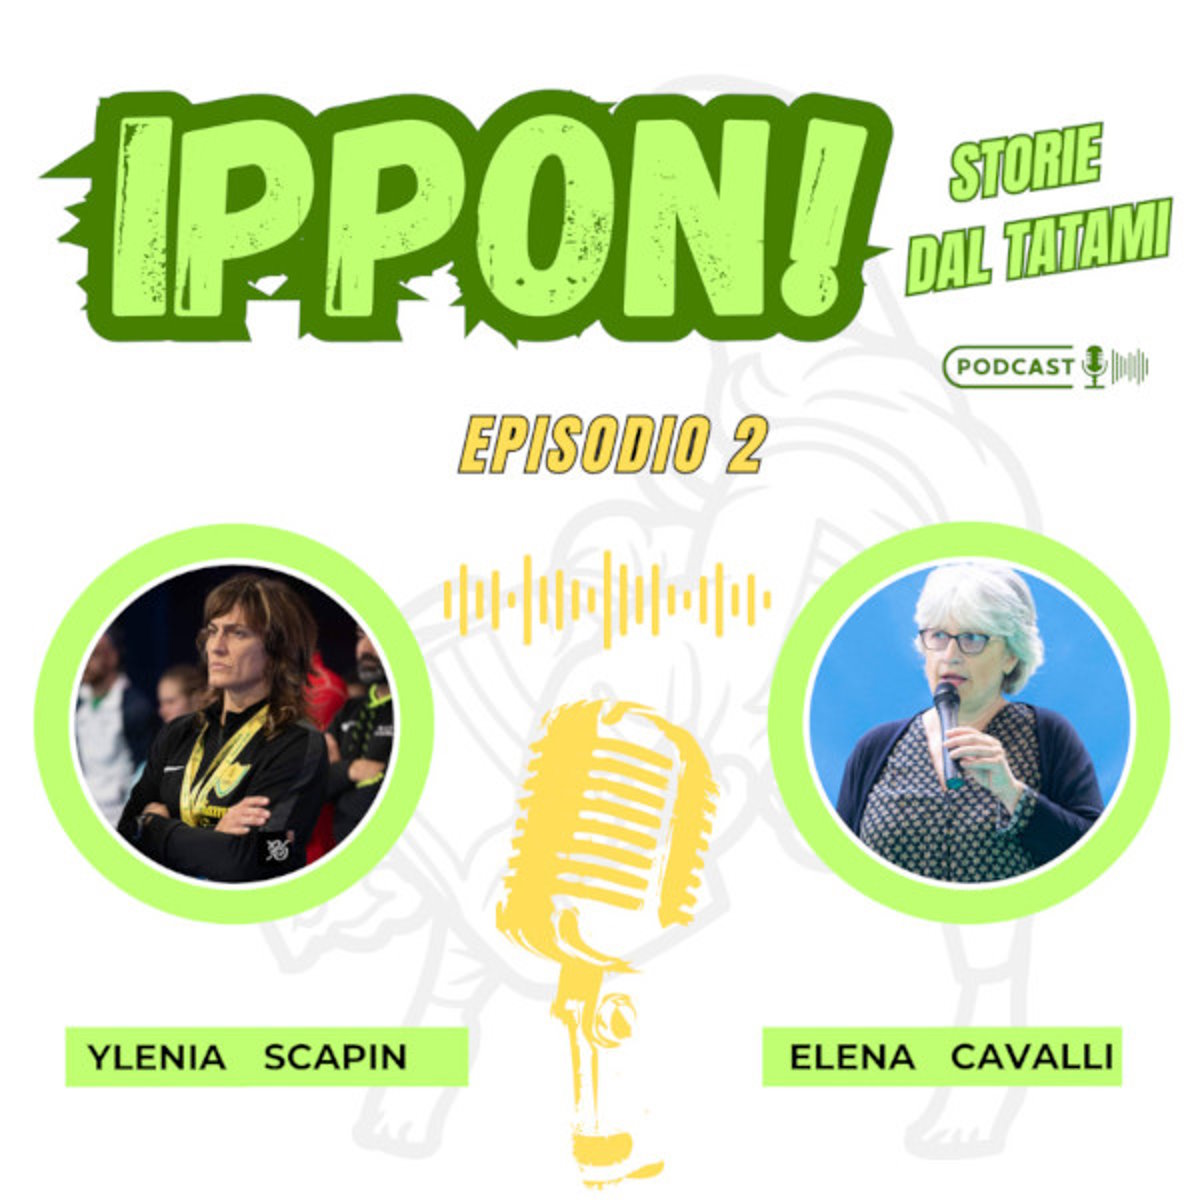 Nuovo episodio del podcast Ippon! Storie dal tatami: ospite Ylenia Scapin, dalle olimpiadi al dojo